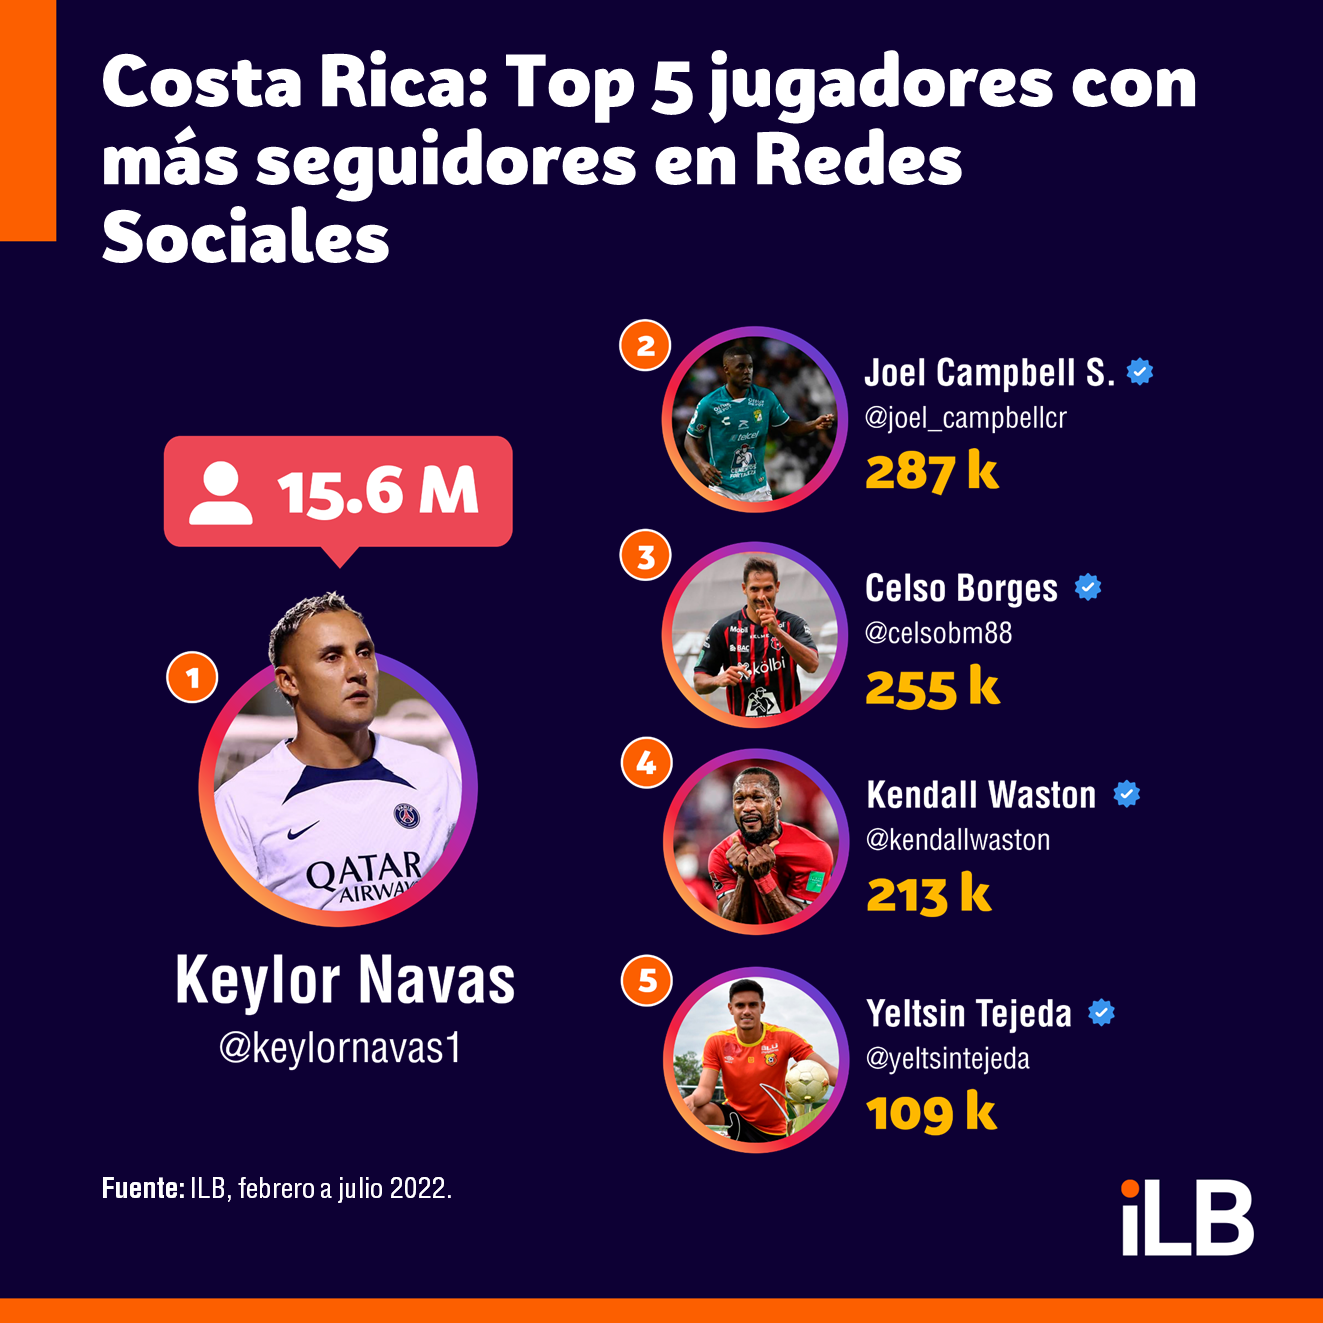 Los cinco jugadores de fútbol de Costa Rica con más seguidores en redes sociales